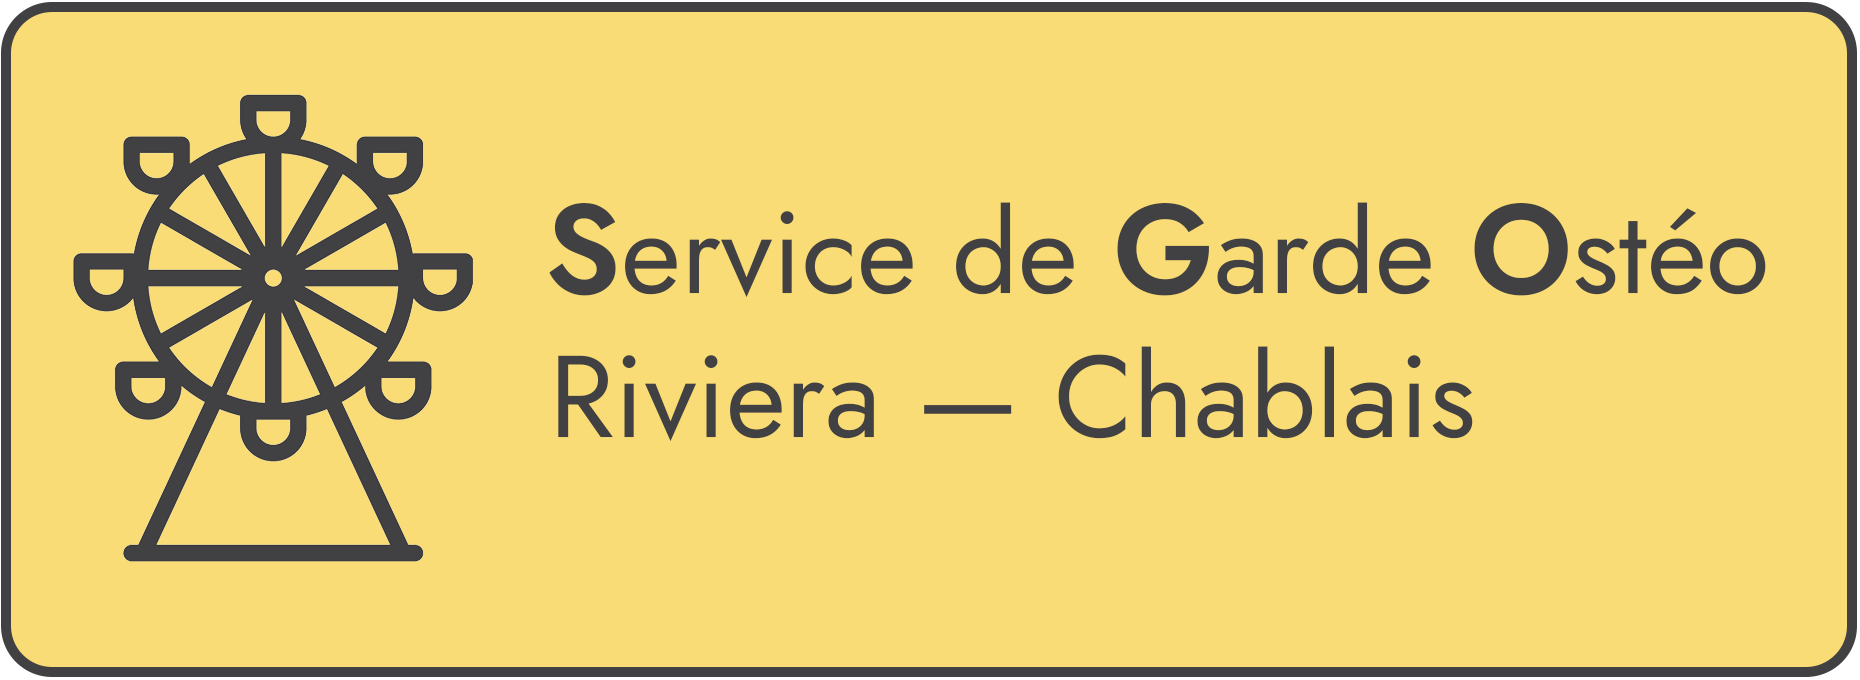 Service de Garde Ostéopathique - Riviera - Chablais